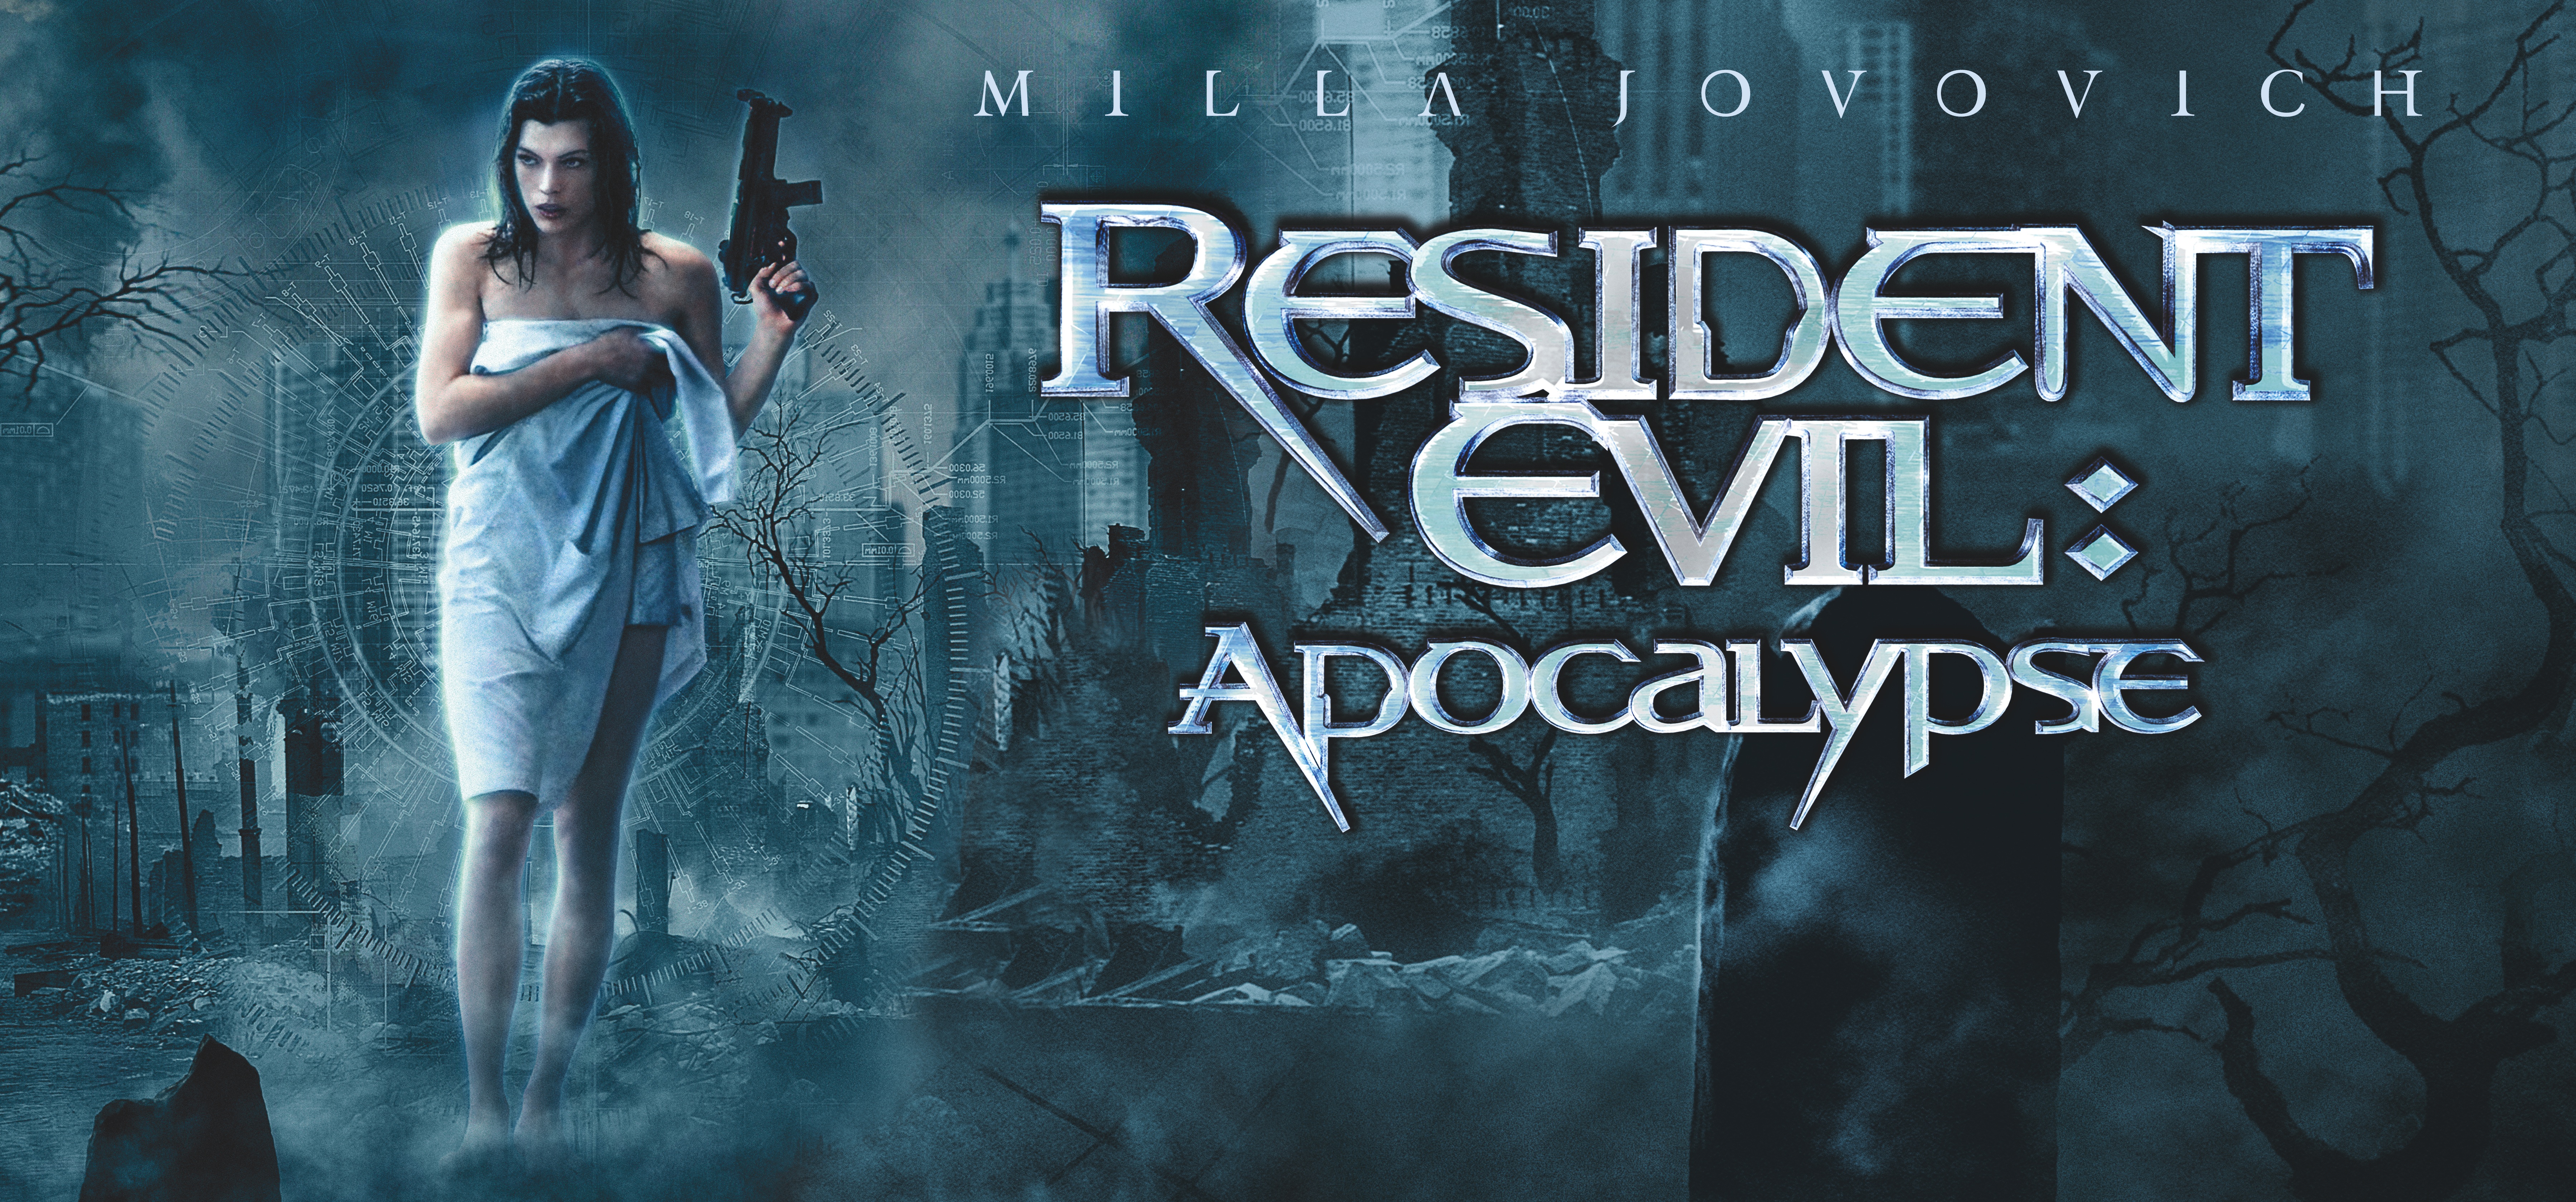 Descargar fondos de escritorio de Resident Evil: Apocalipsis HD